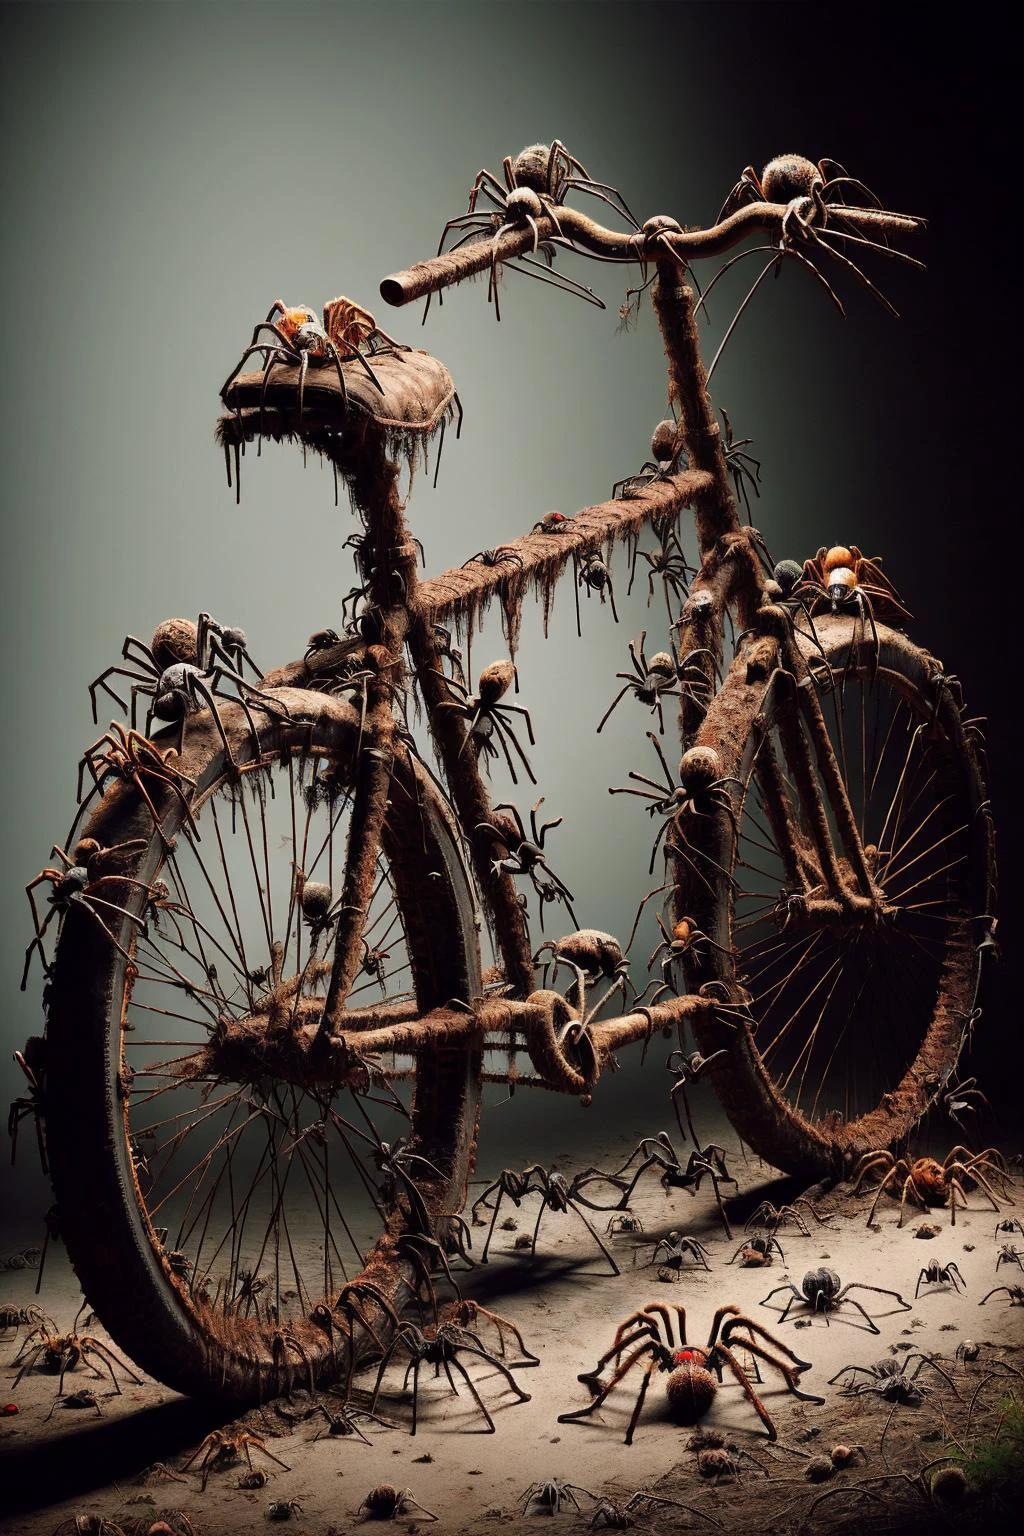 Ais-spiderz em uma bicicleta enferrujada, em um celeiro esquecido 